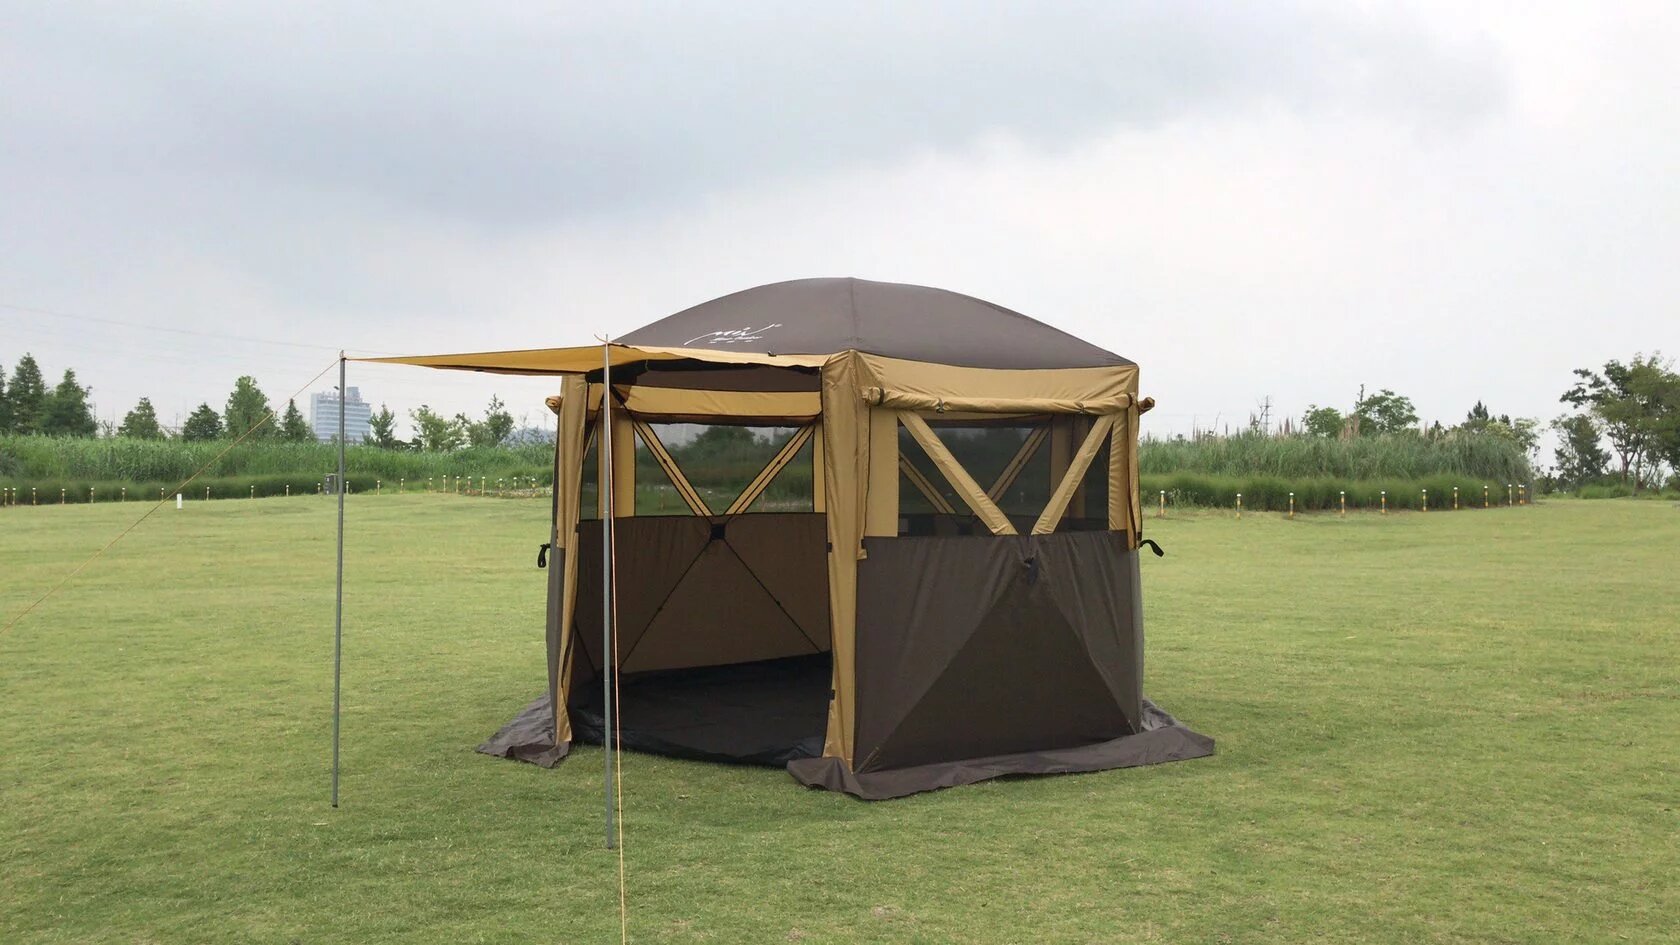 Шестиугольный тент шатер с полом Mircamping 2905S беседка для мероприятий туризма пикника и кемпинга